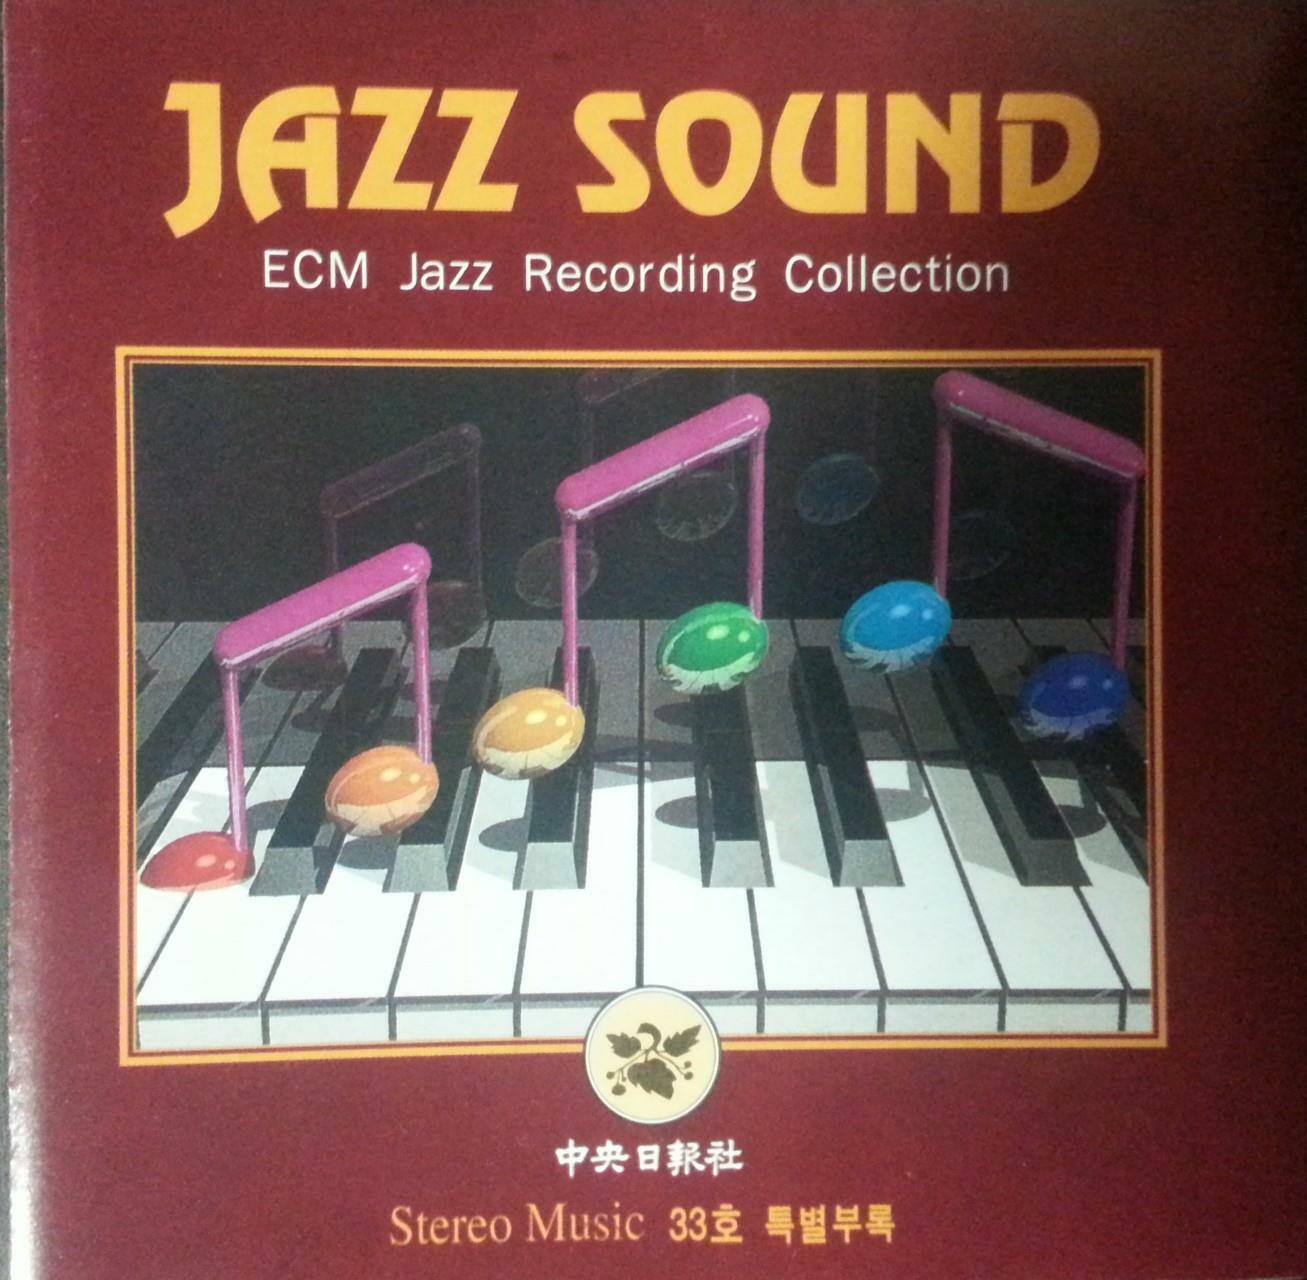 알라딘: [중고] JAZZ SOUND (ecm jazz recording collection)스테레오 뮤직 33호 특별부록[중고] JAZZ SOUND (ecm jazz recording collection)스테레오 뮤직 33호 특별부록 - 웹